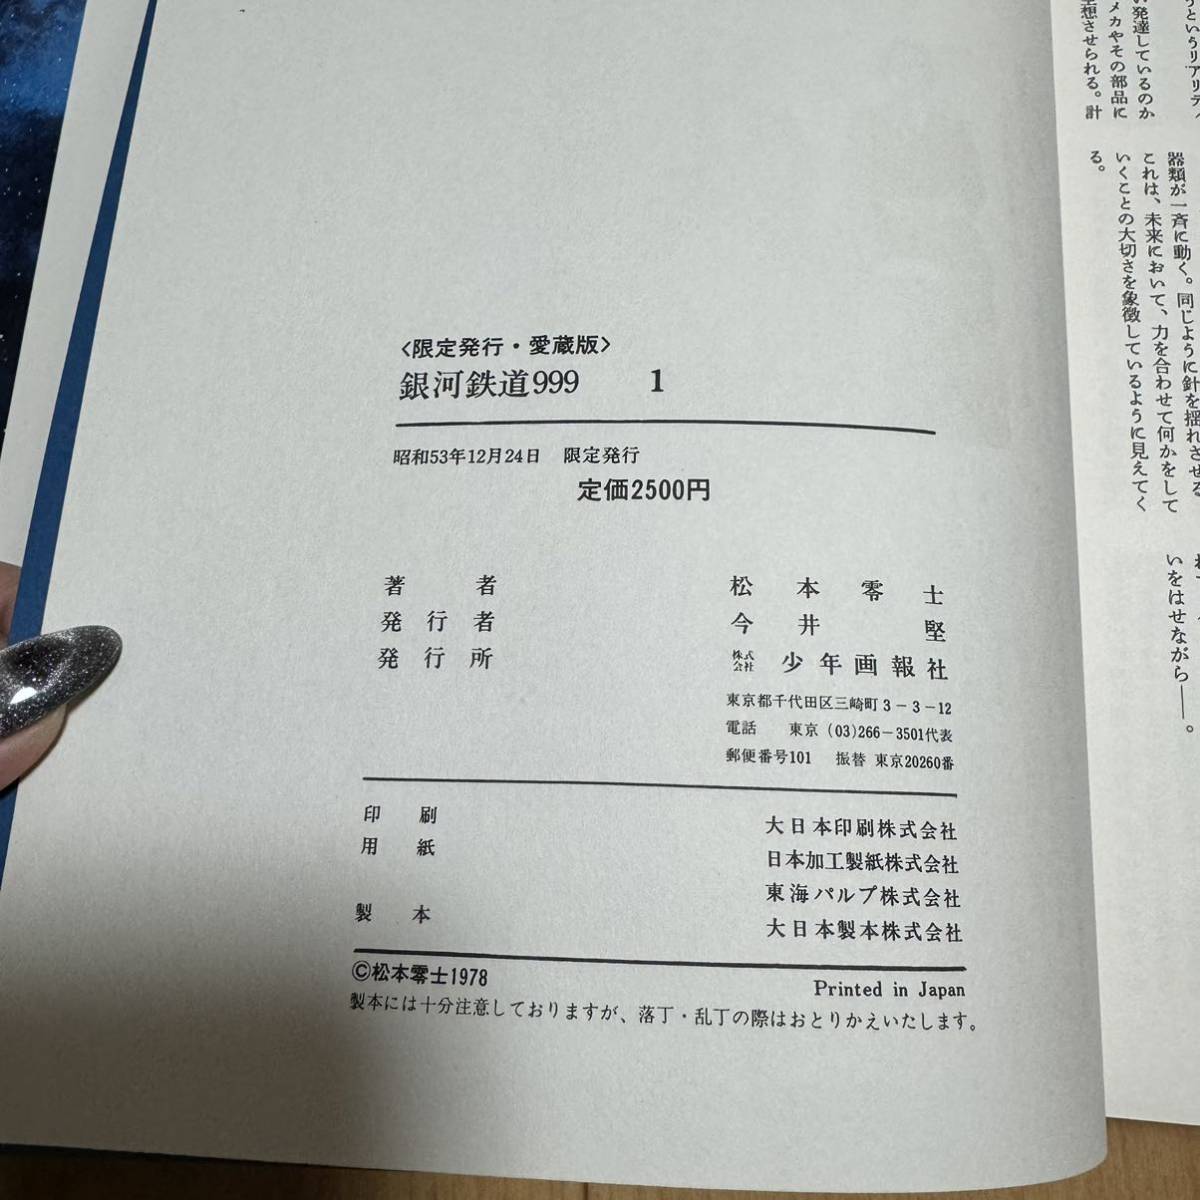 限定発行 初版 愛蔵版 銀河鉄道999 第1巻 漫画 松本零士 _画像9